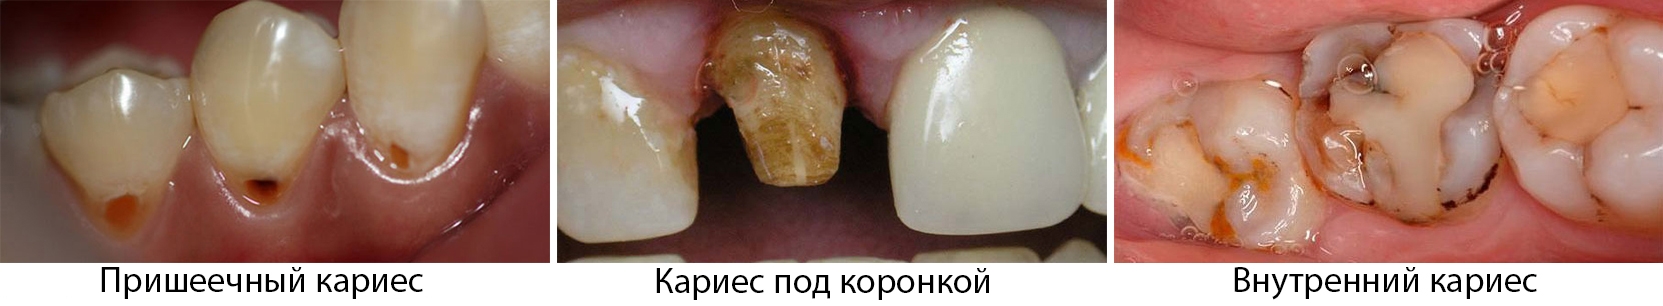 Кариес на передних зубах - что это, лечение, диагностика, симптомы